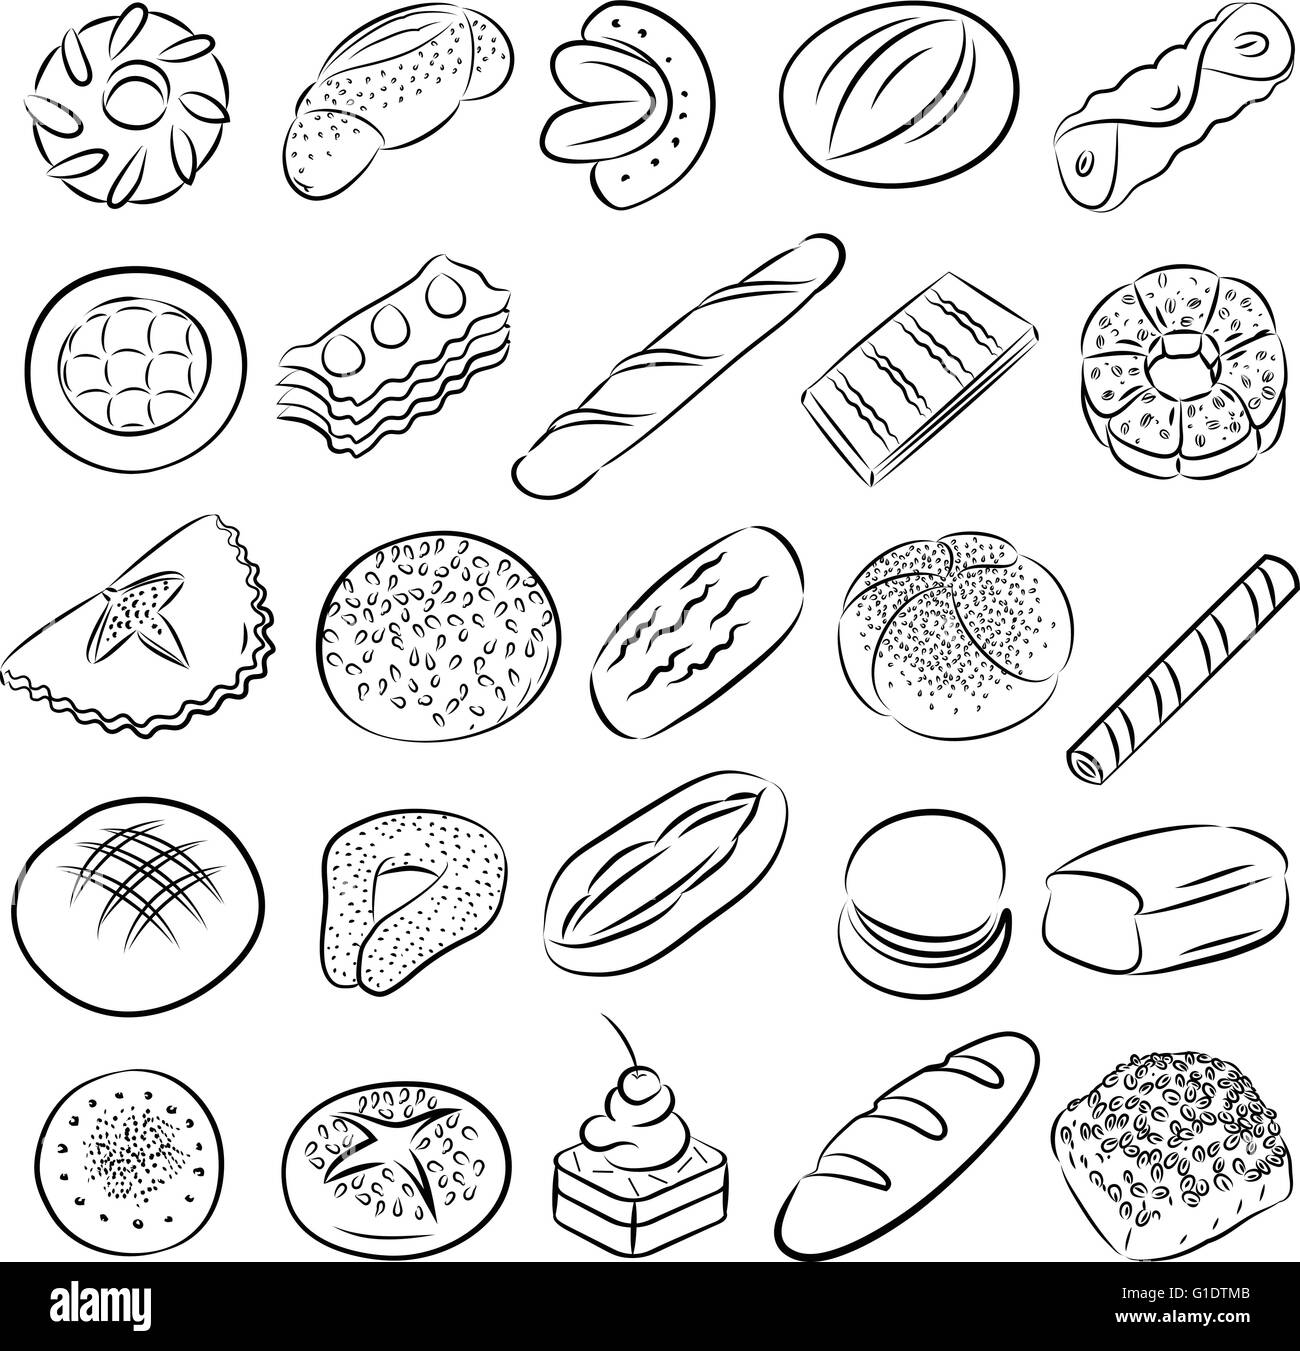 Vektor-Sammlung von Bäckerei und Konditorei Essen im Linienmodus Kunst Stock Vektor